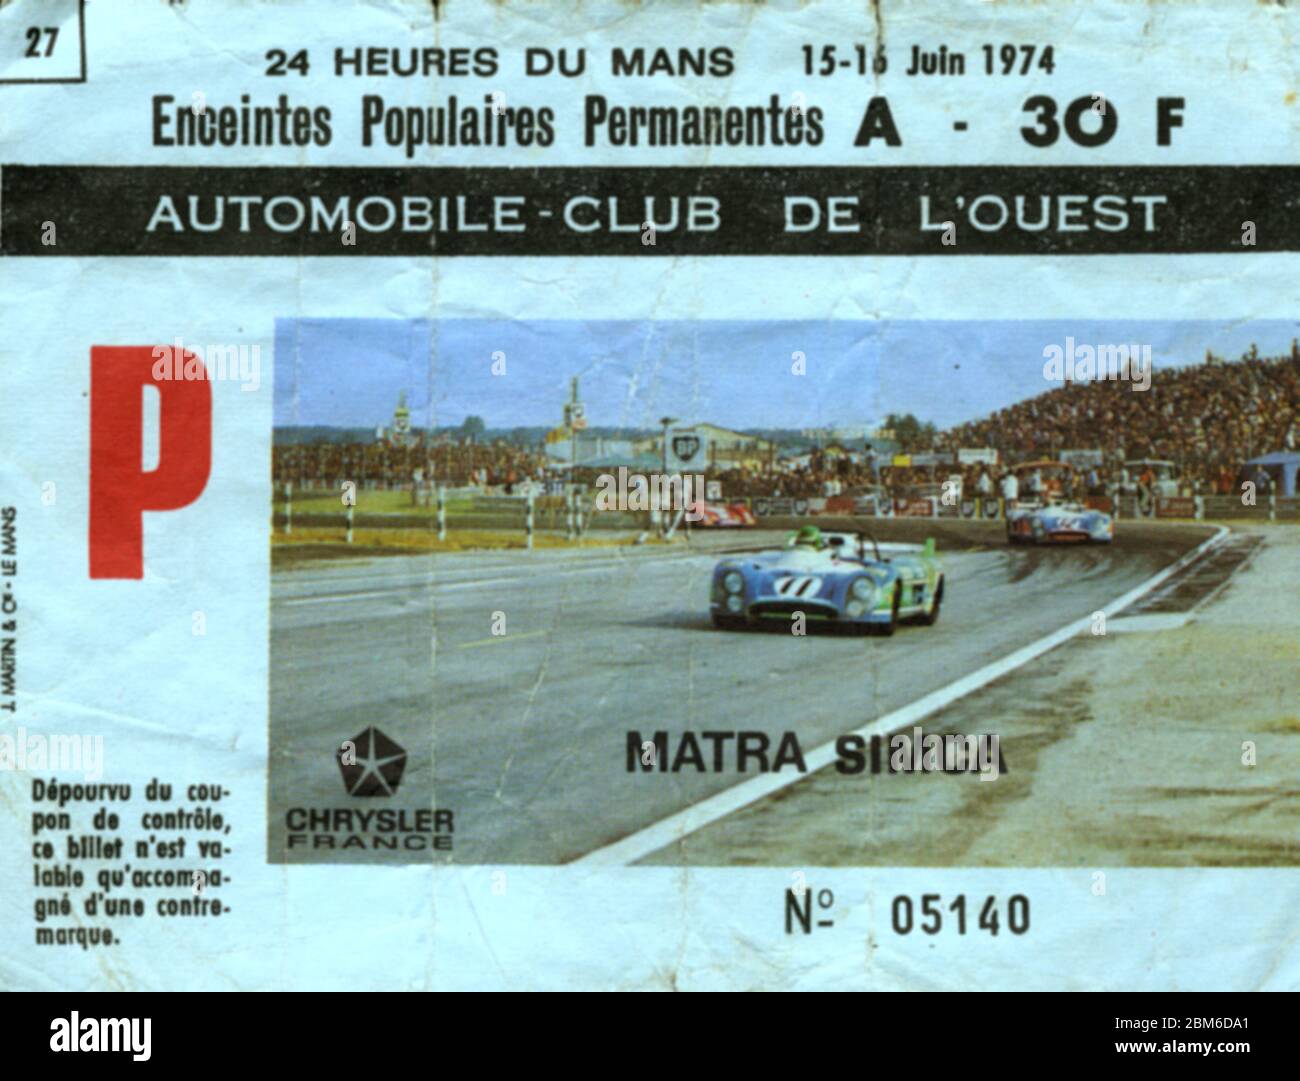 Biglietto d'ingresso alla gara 24 le Mans 1974 ore di motore, le Mans, Francia, UE - 15-16 giugno 1974 Foto Stock